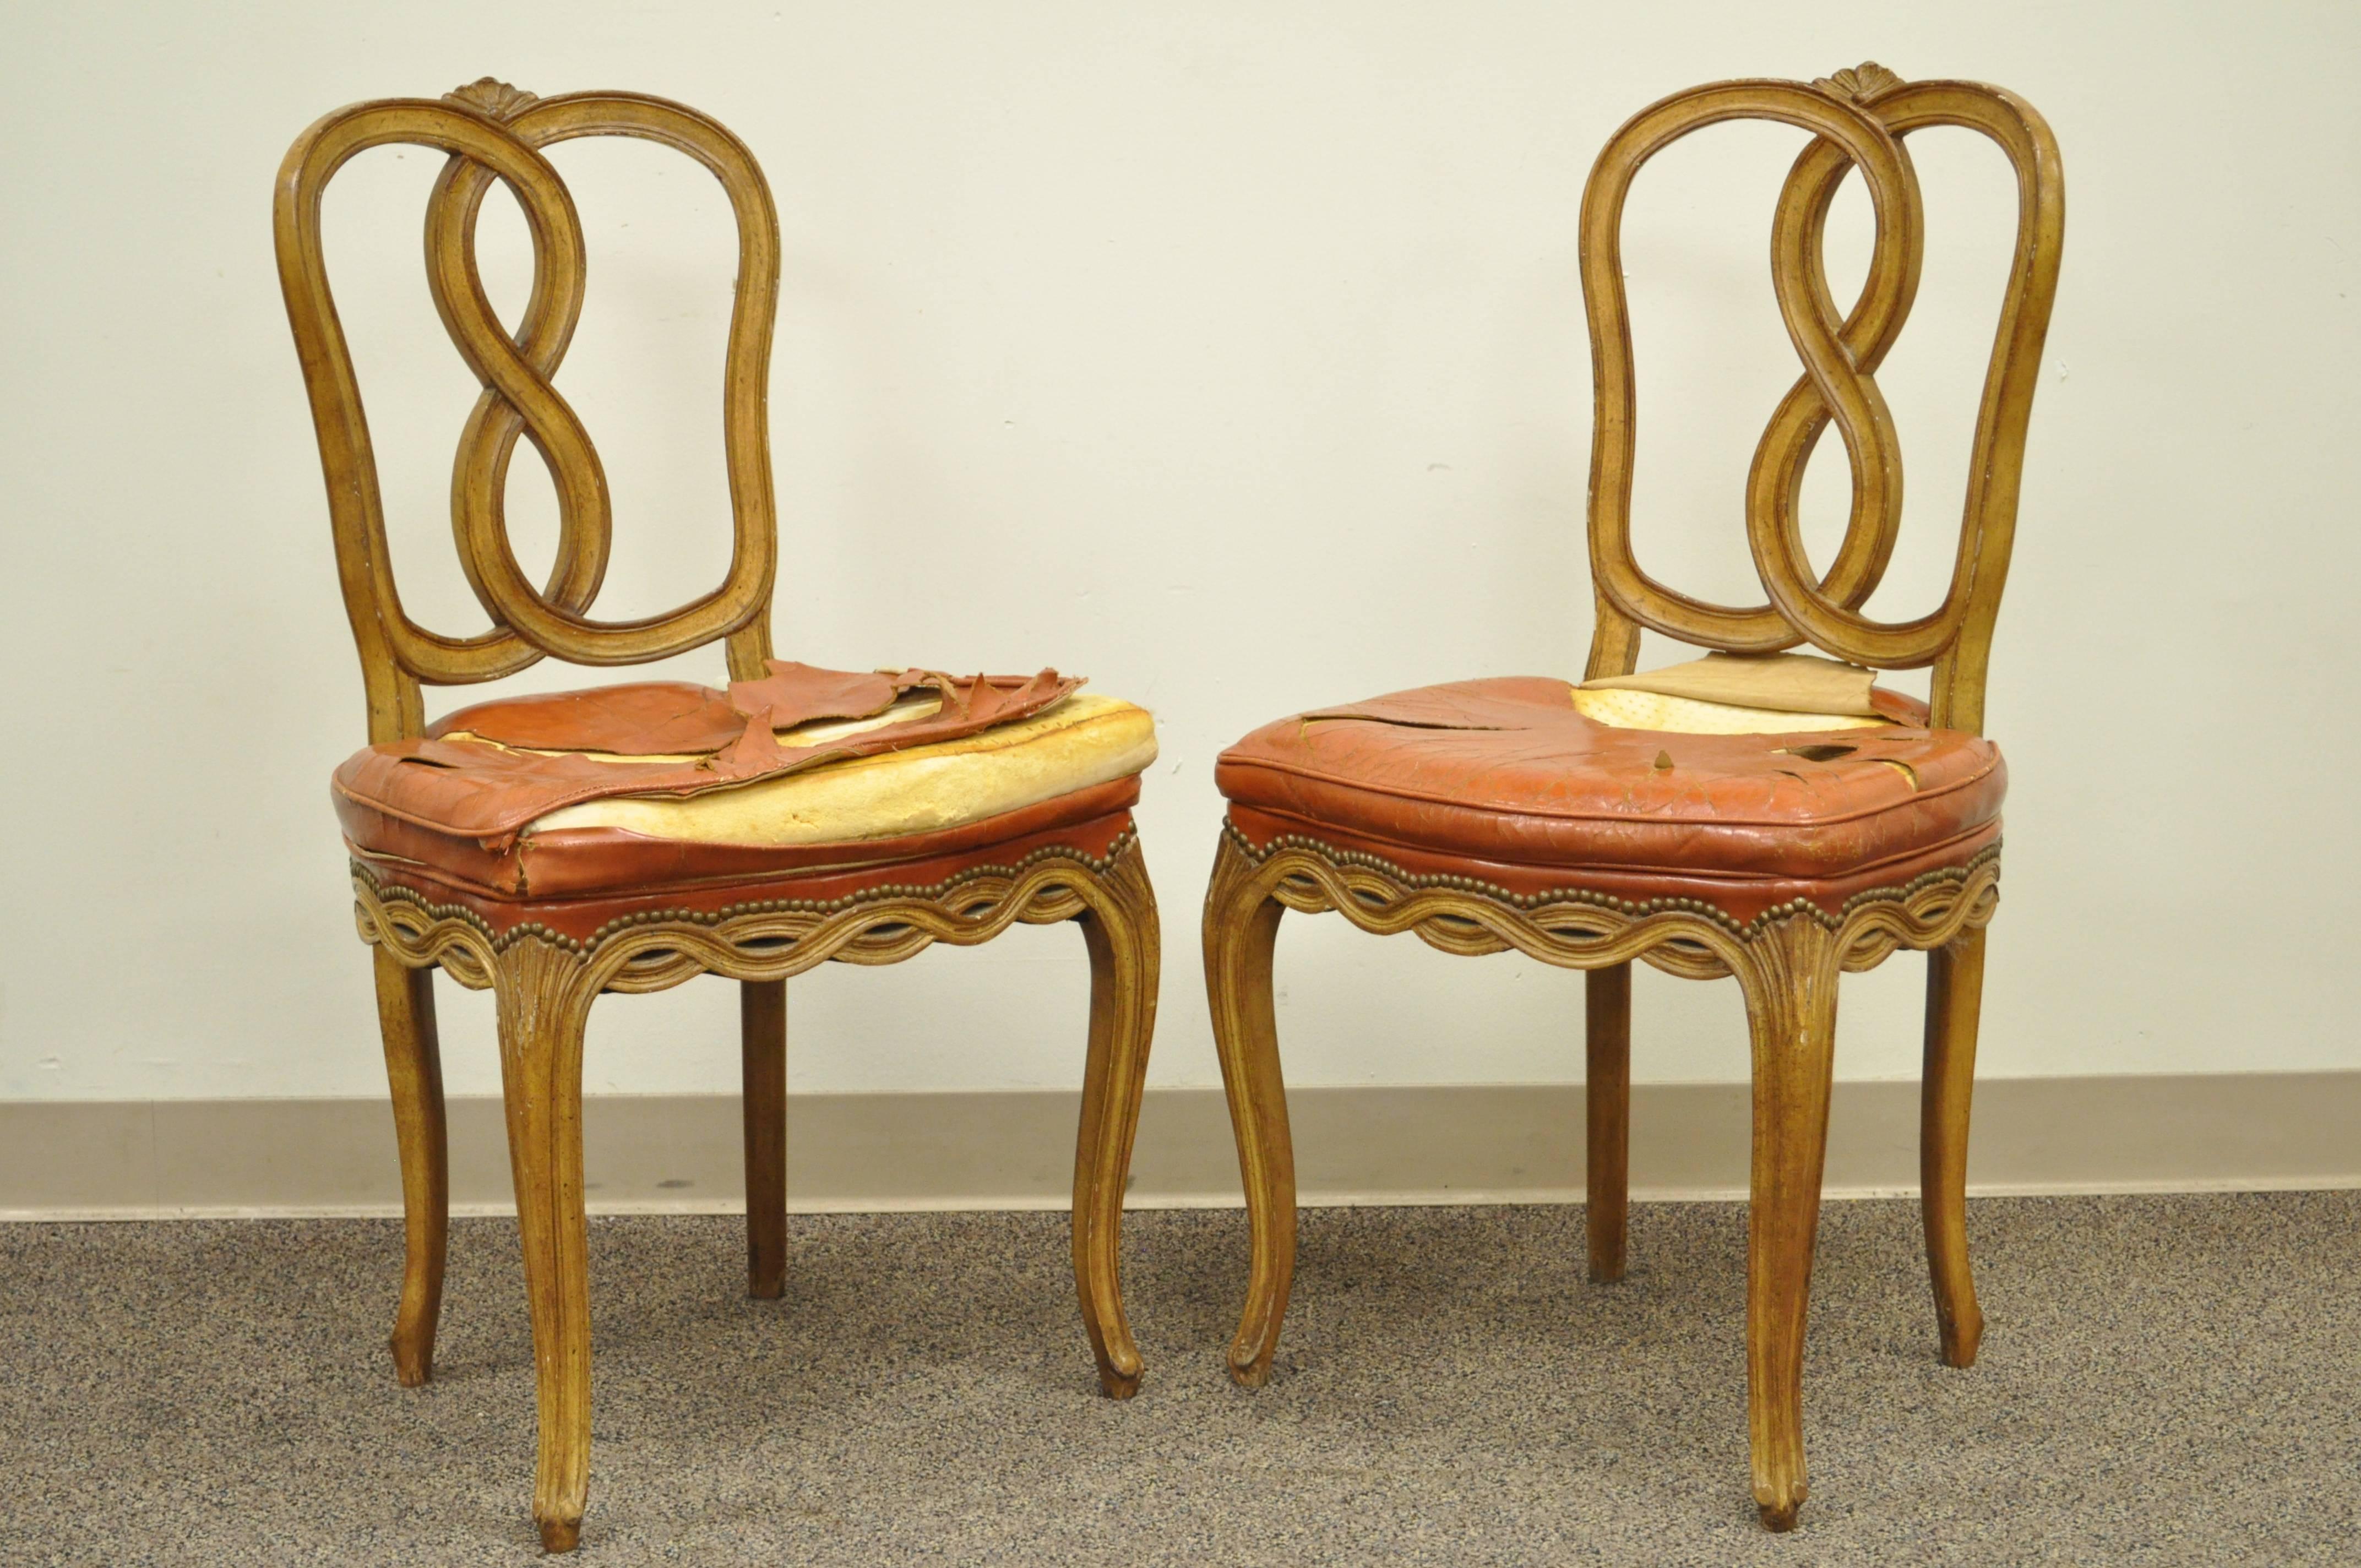 Ensemble de qualité de six chaises de salle à manger vintage Hollywood Regency en bois massif à dossier ruban. L'ensemble présente des dos et des jupes festonnés en forme de ruban ou de bretzel, ainsi que des pieds cabriole bien galbés. État